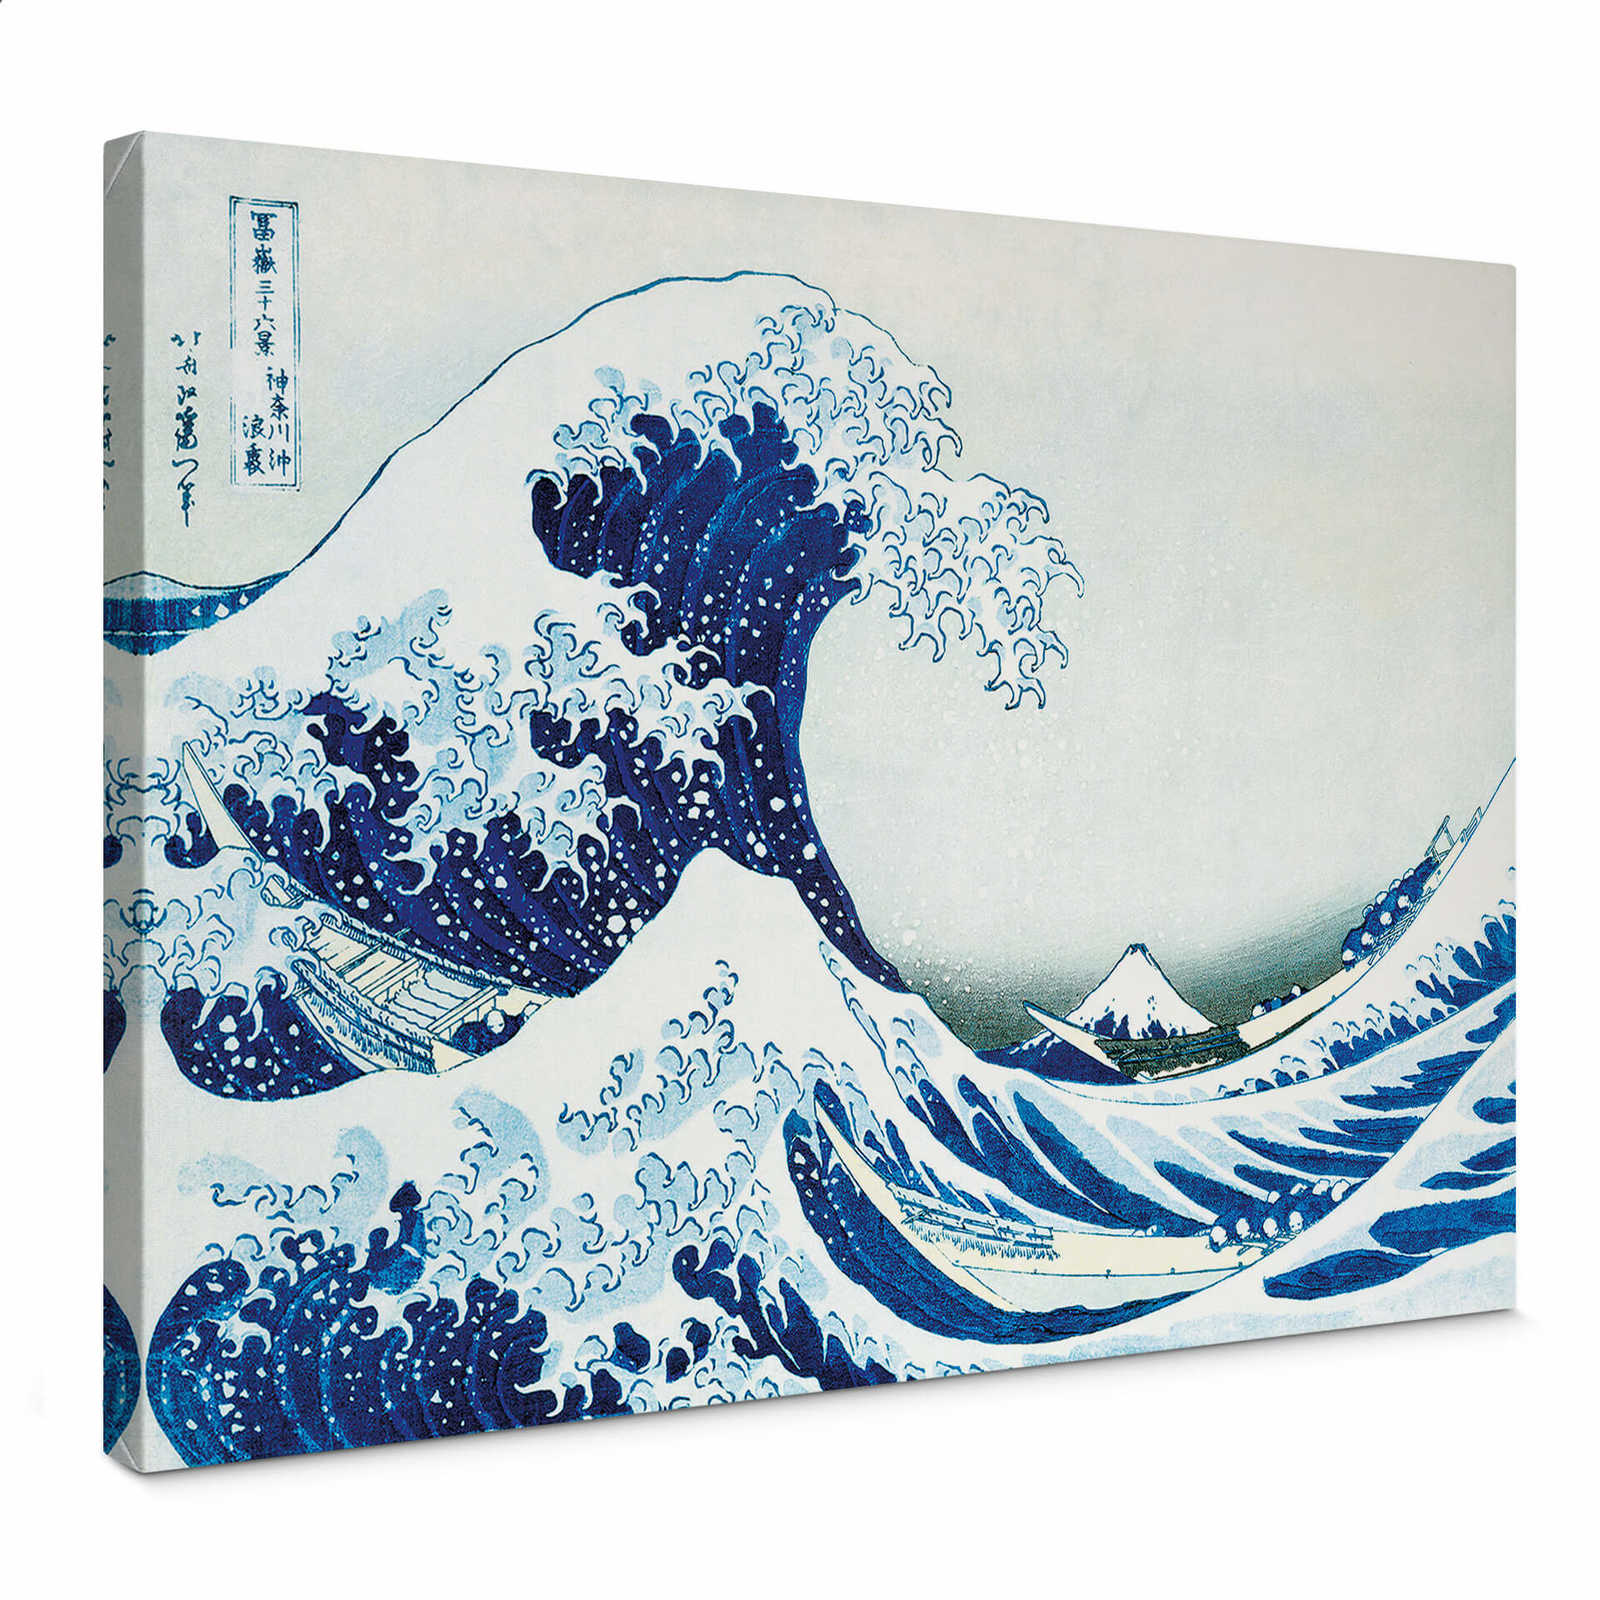         Leinwandbild "Die große Welle bei Kanagawa" von Hokusai – 0,70 m x 0,50 m
    